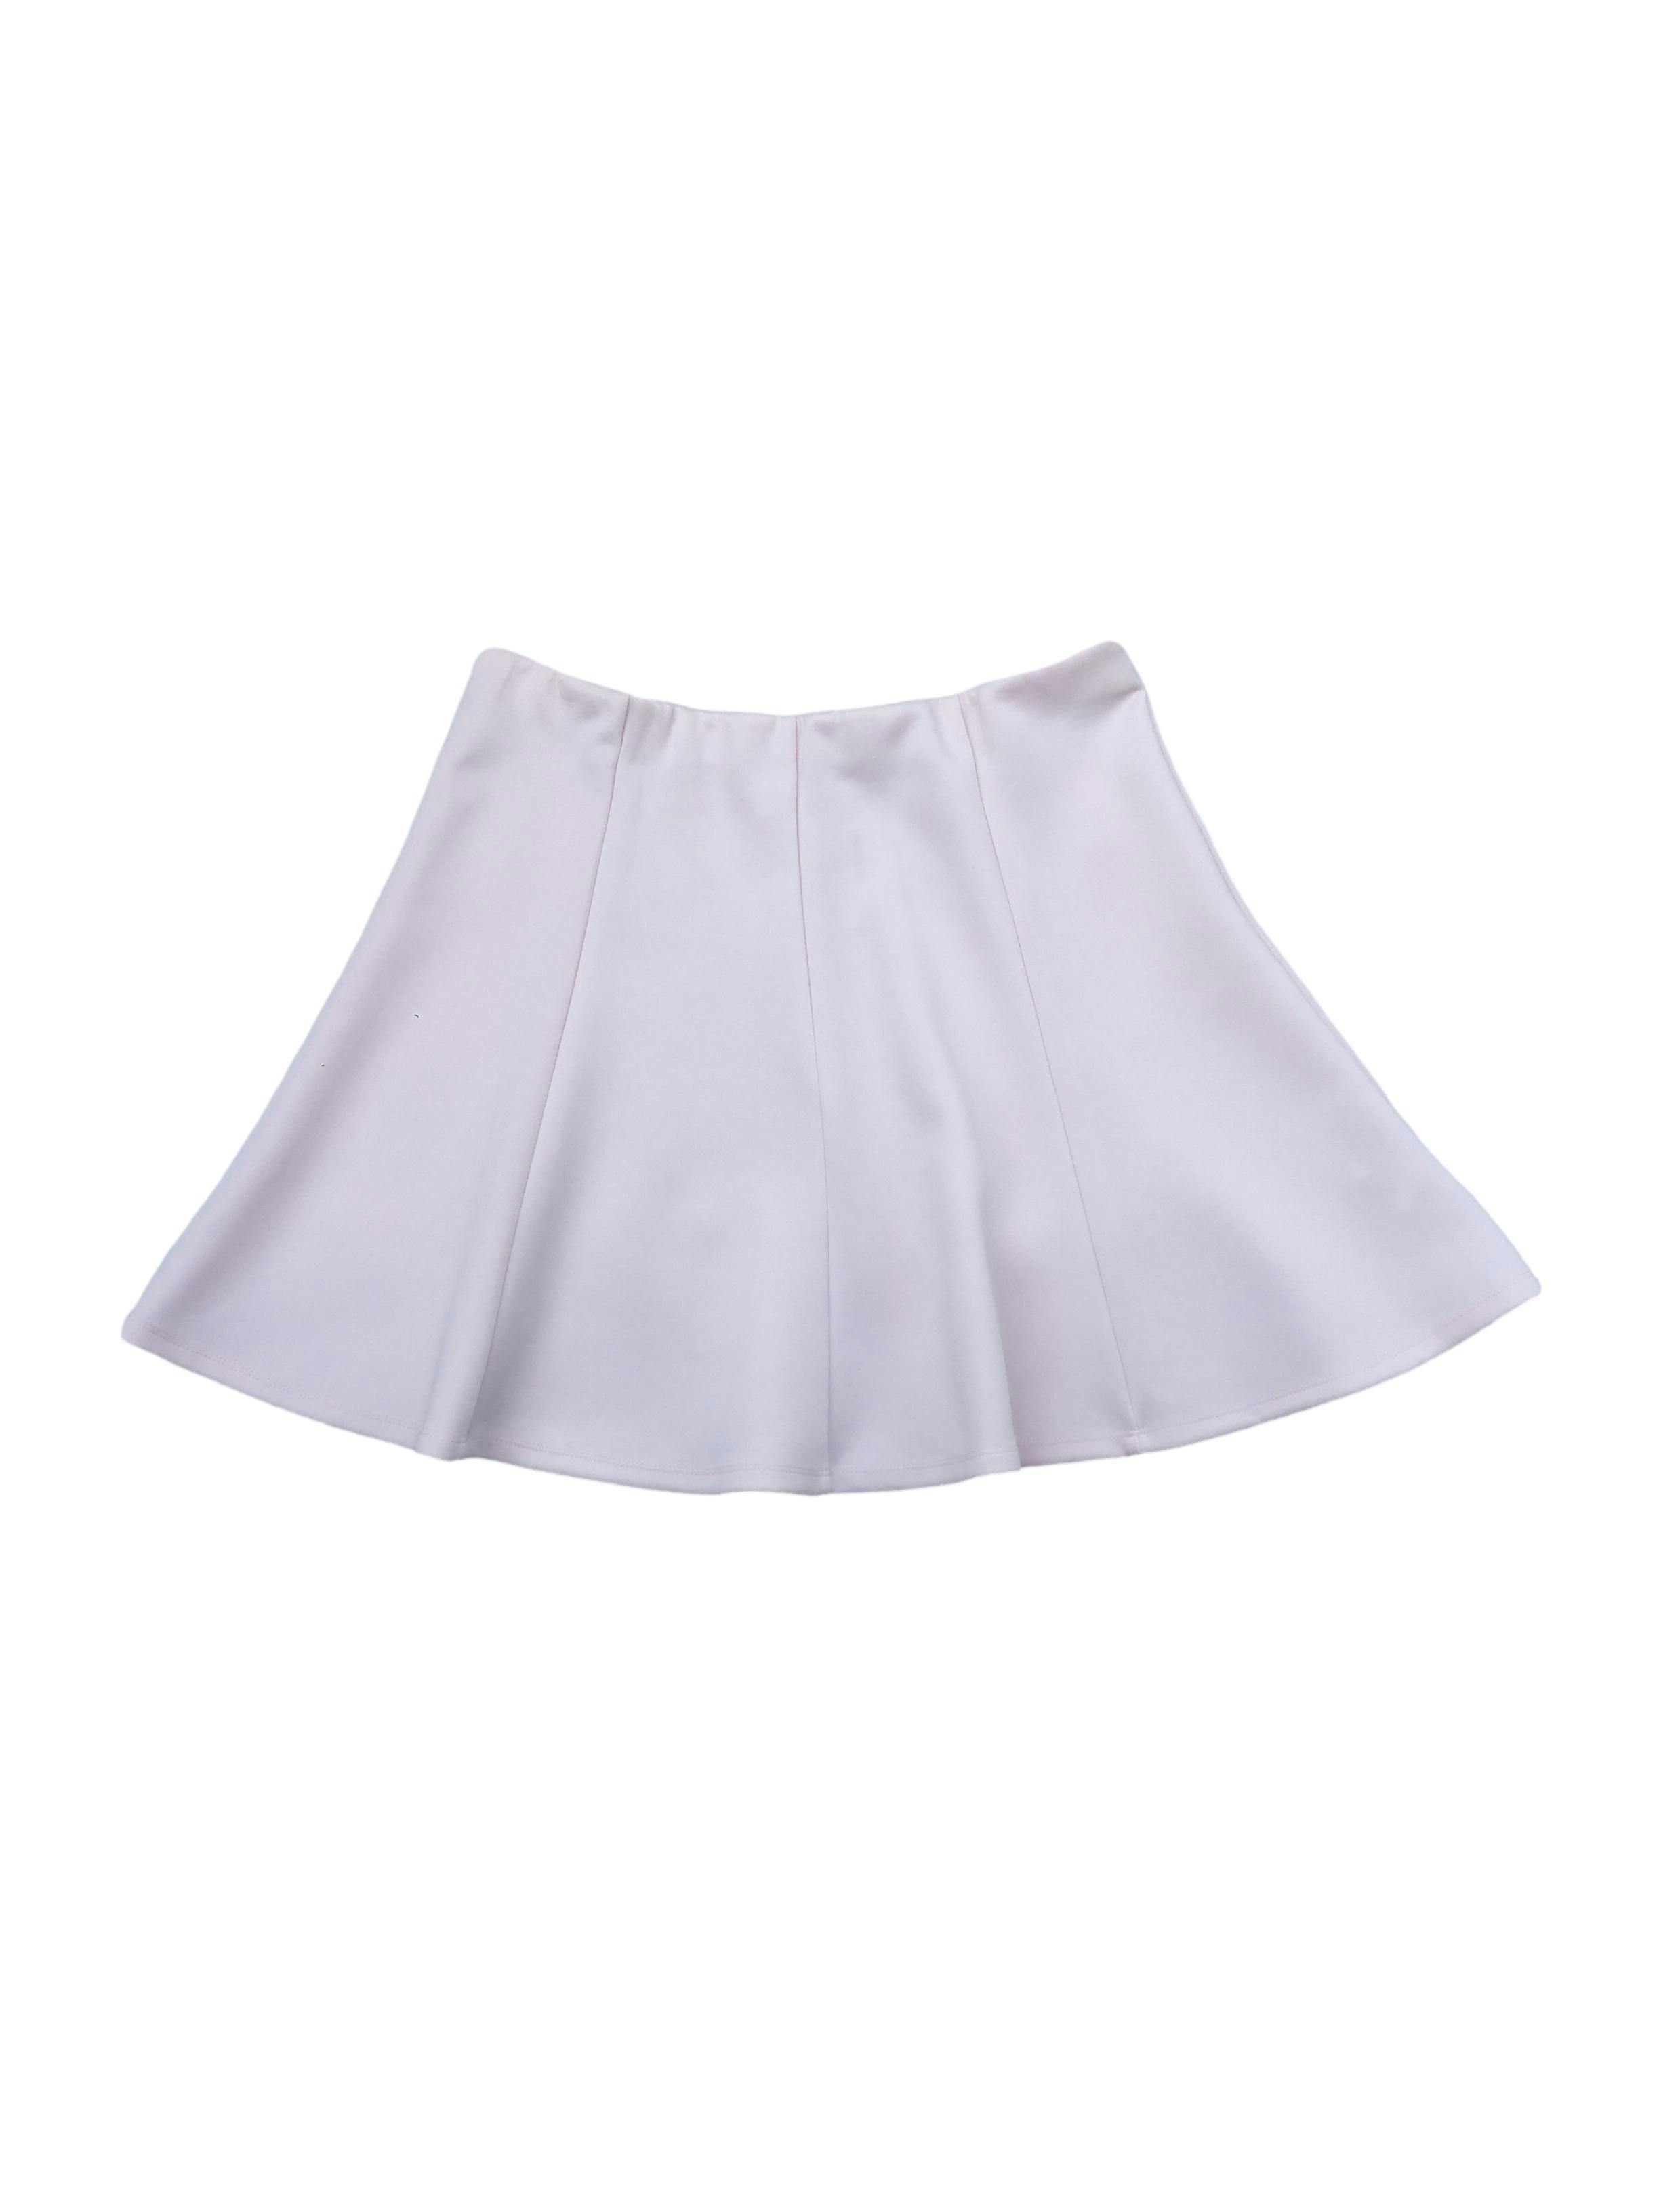 Falda semicircular Index rosa pastel, modelo a piezas con cintura elástica. Cintura 80cm sin estirar, Largo 44cm.